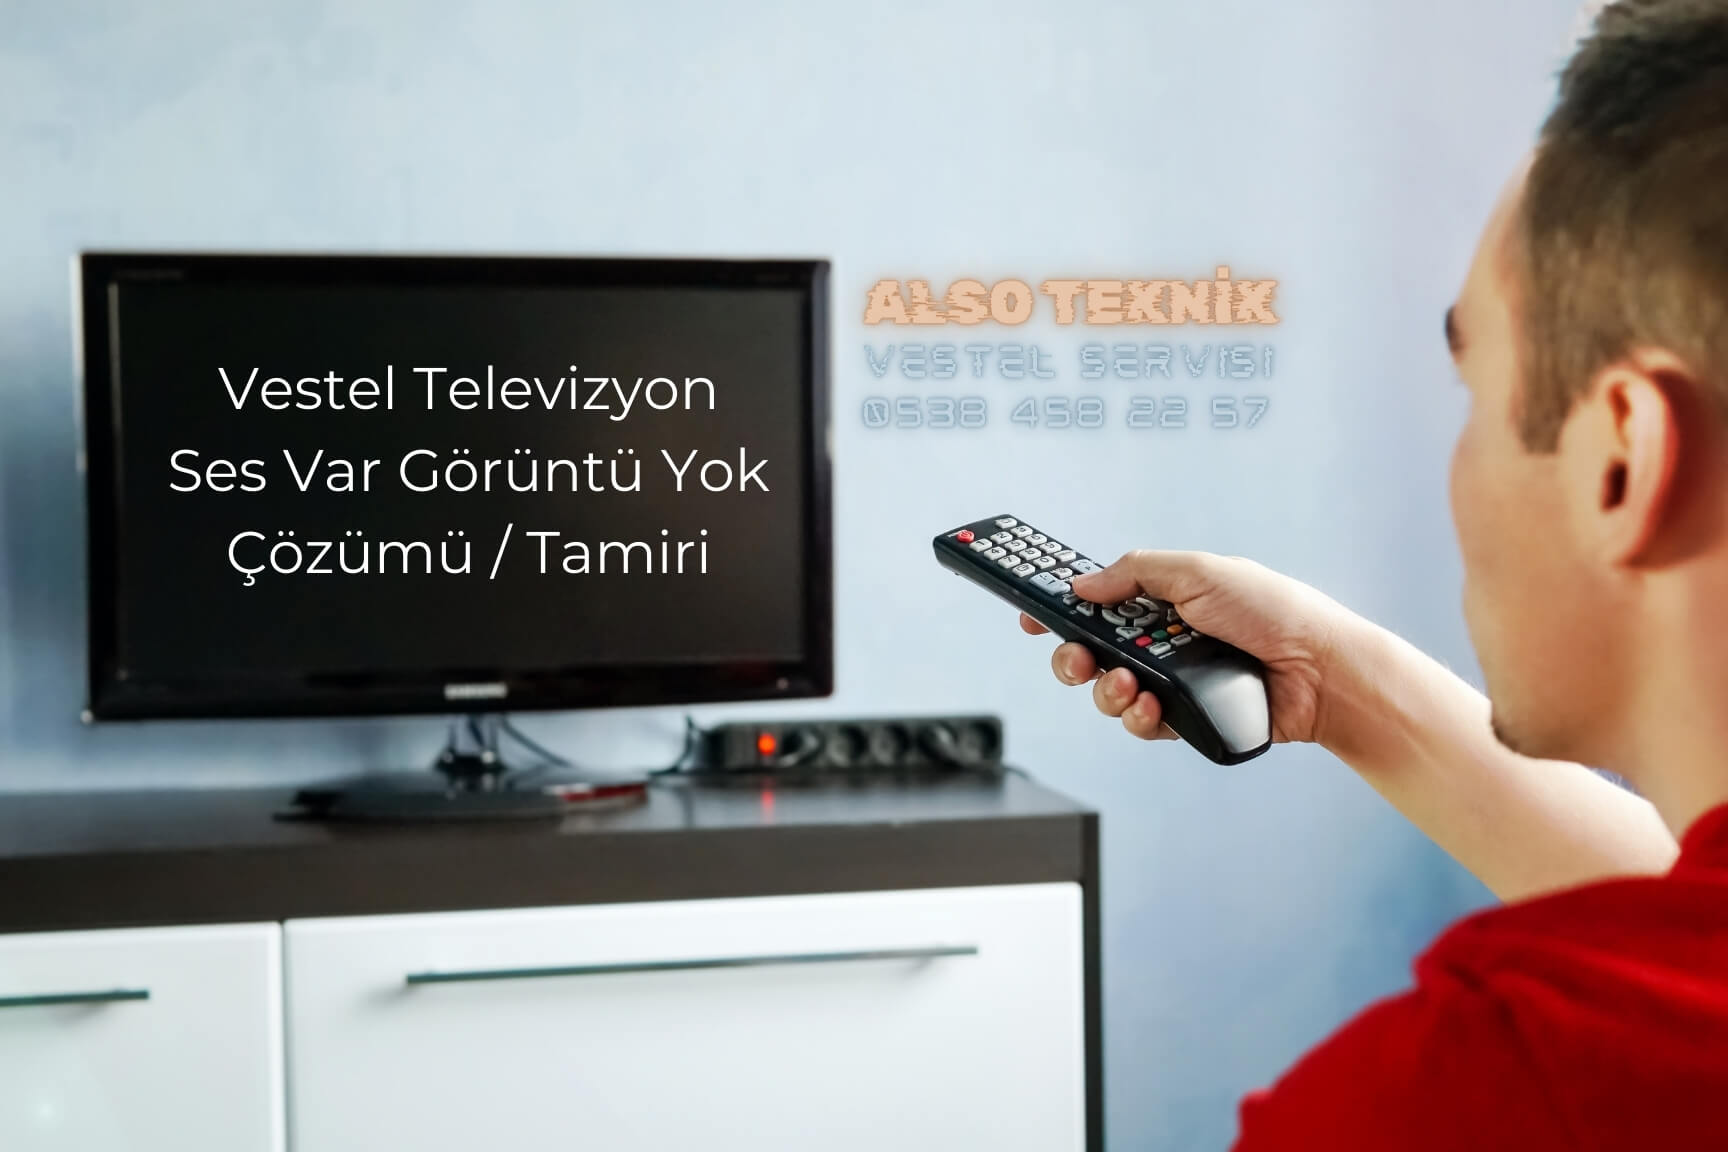 Vestel Televizyon Ses Var Görüntü Yok Çözümü - Tamiri